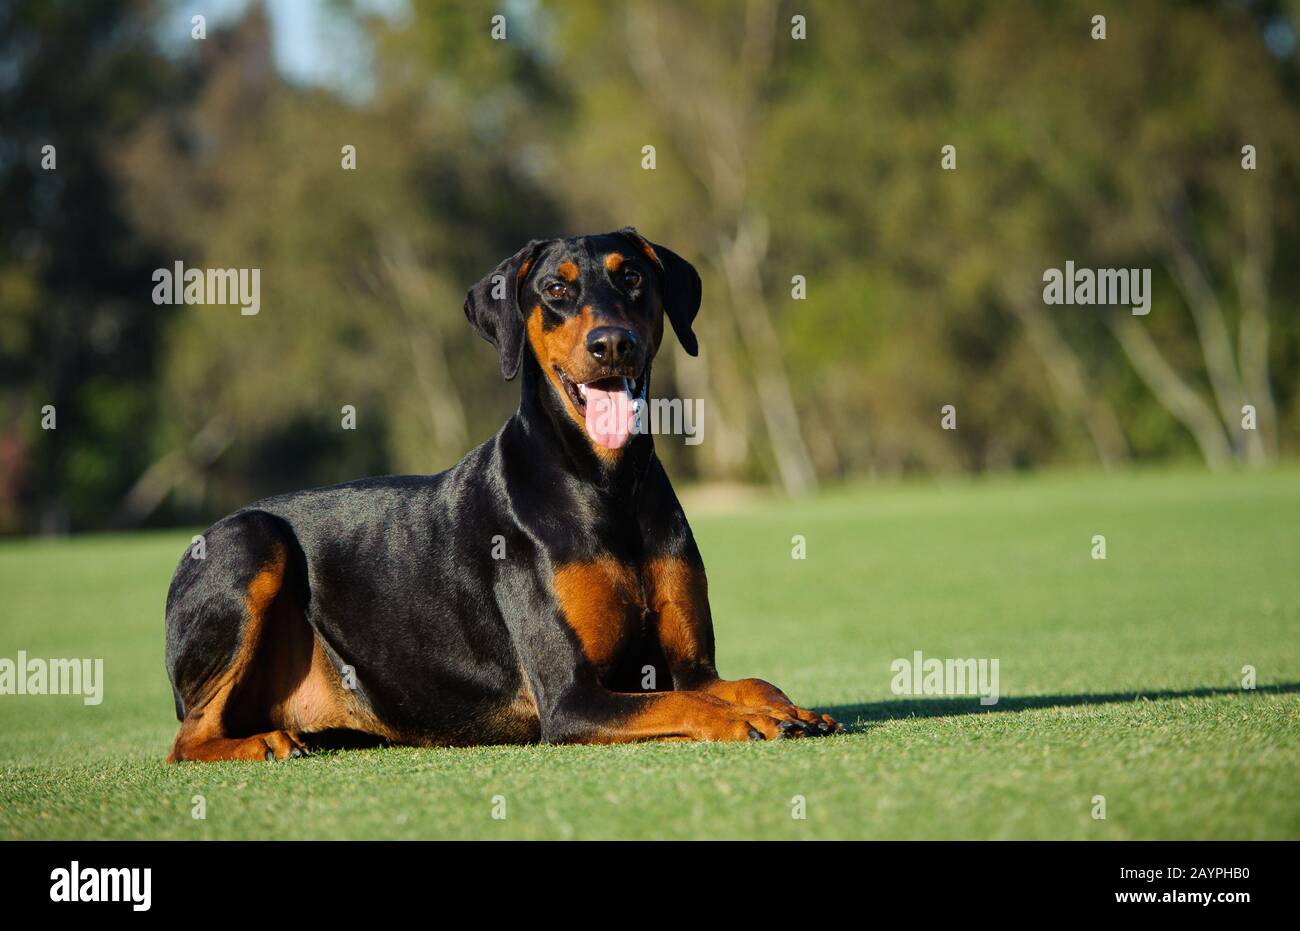 Doberman Pinscher dog Stock Photo